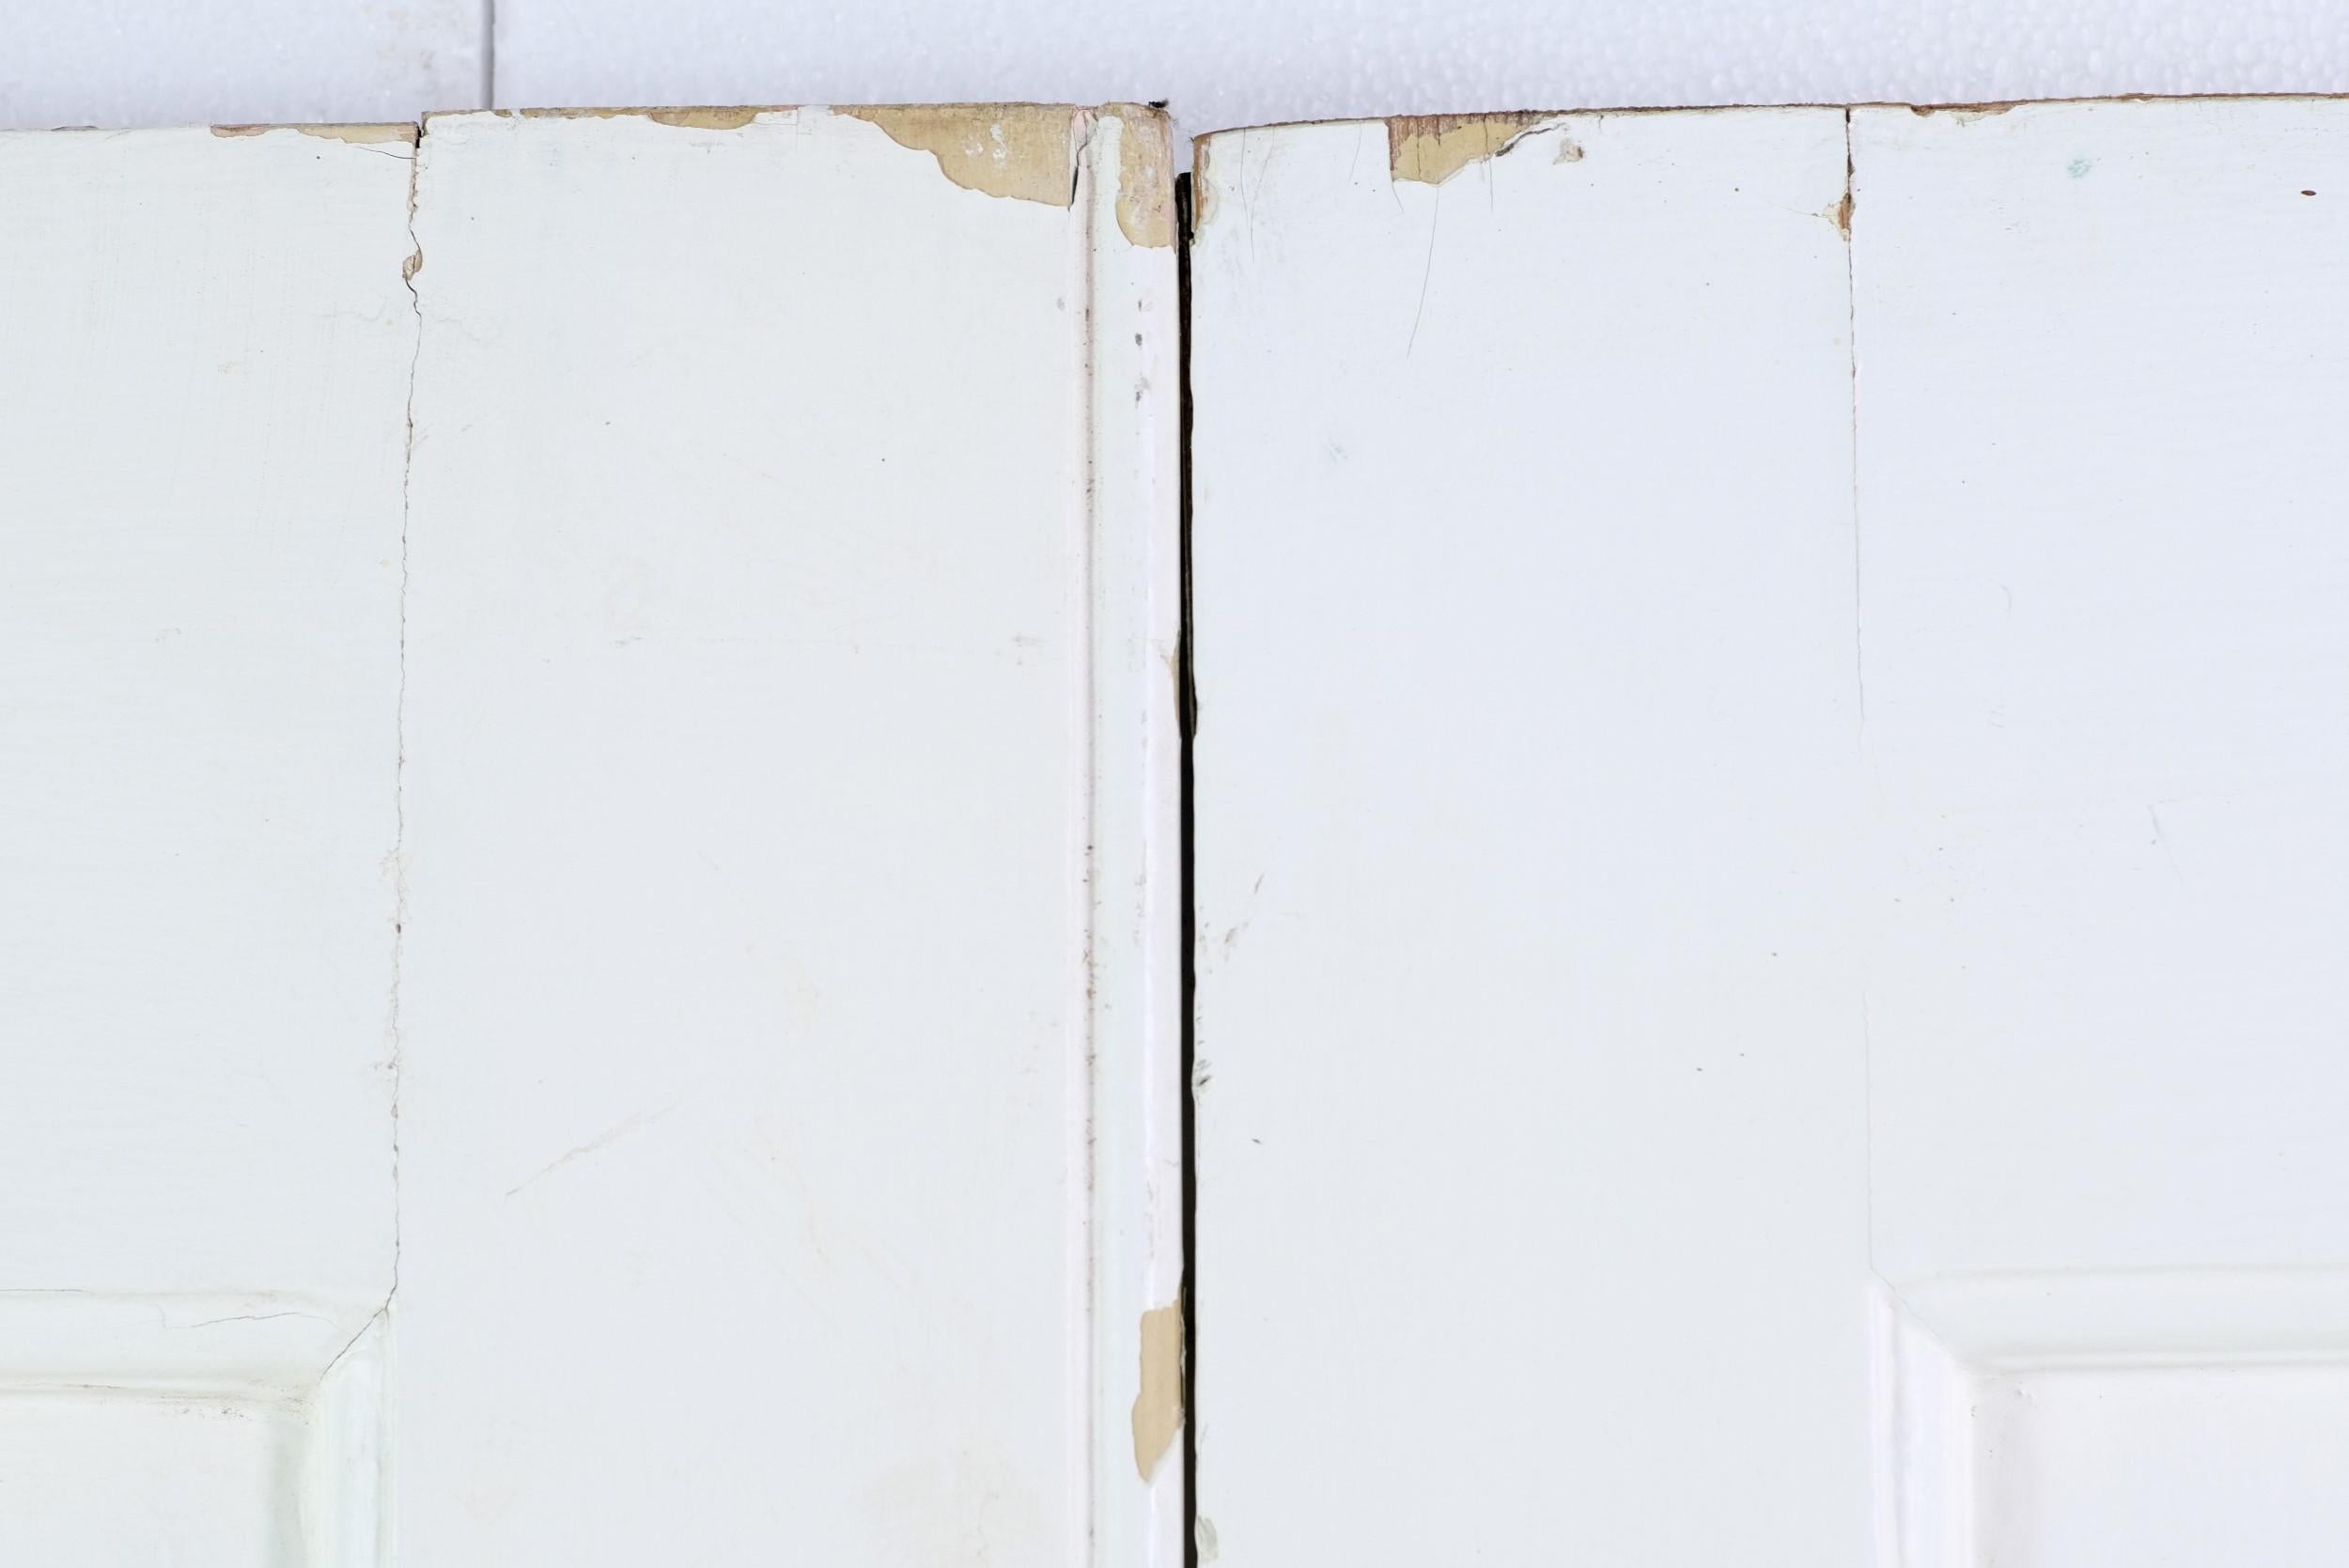 Victorien Ensemble de 8 portes en bois anciennes avec panneaux verticaux et panneaux blancs peints